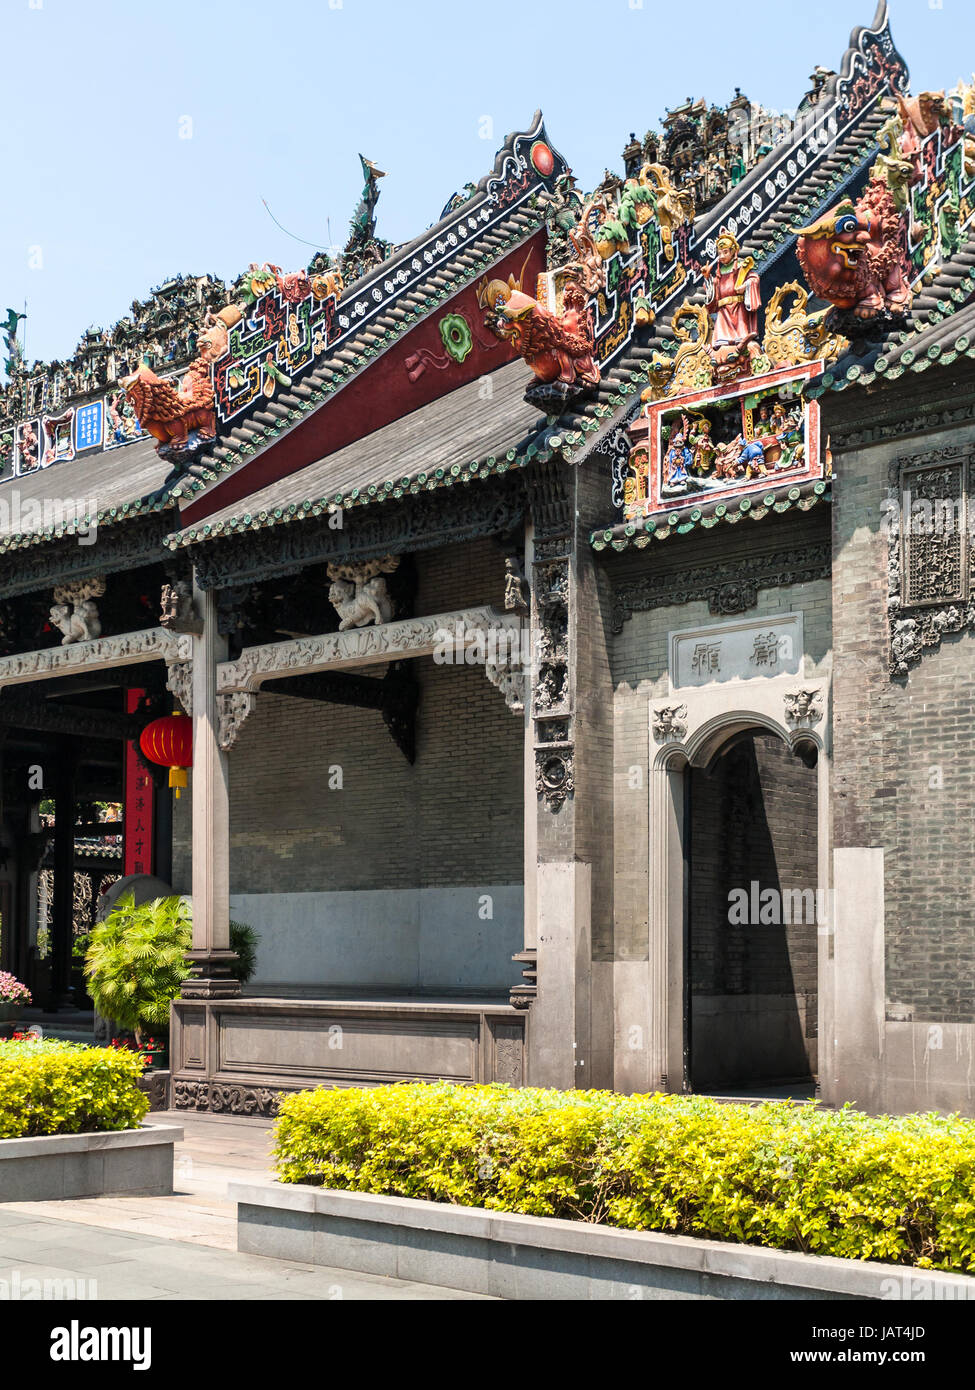 GUANGZHOU - CINA - Aprile 1, 2017: esterno del Clan Chen sala ancestrale tempio accademico (Guangdong Folk Art Museum) nella città di Guangzhou. La casa è stata pr Foto Stock